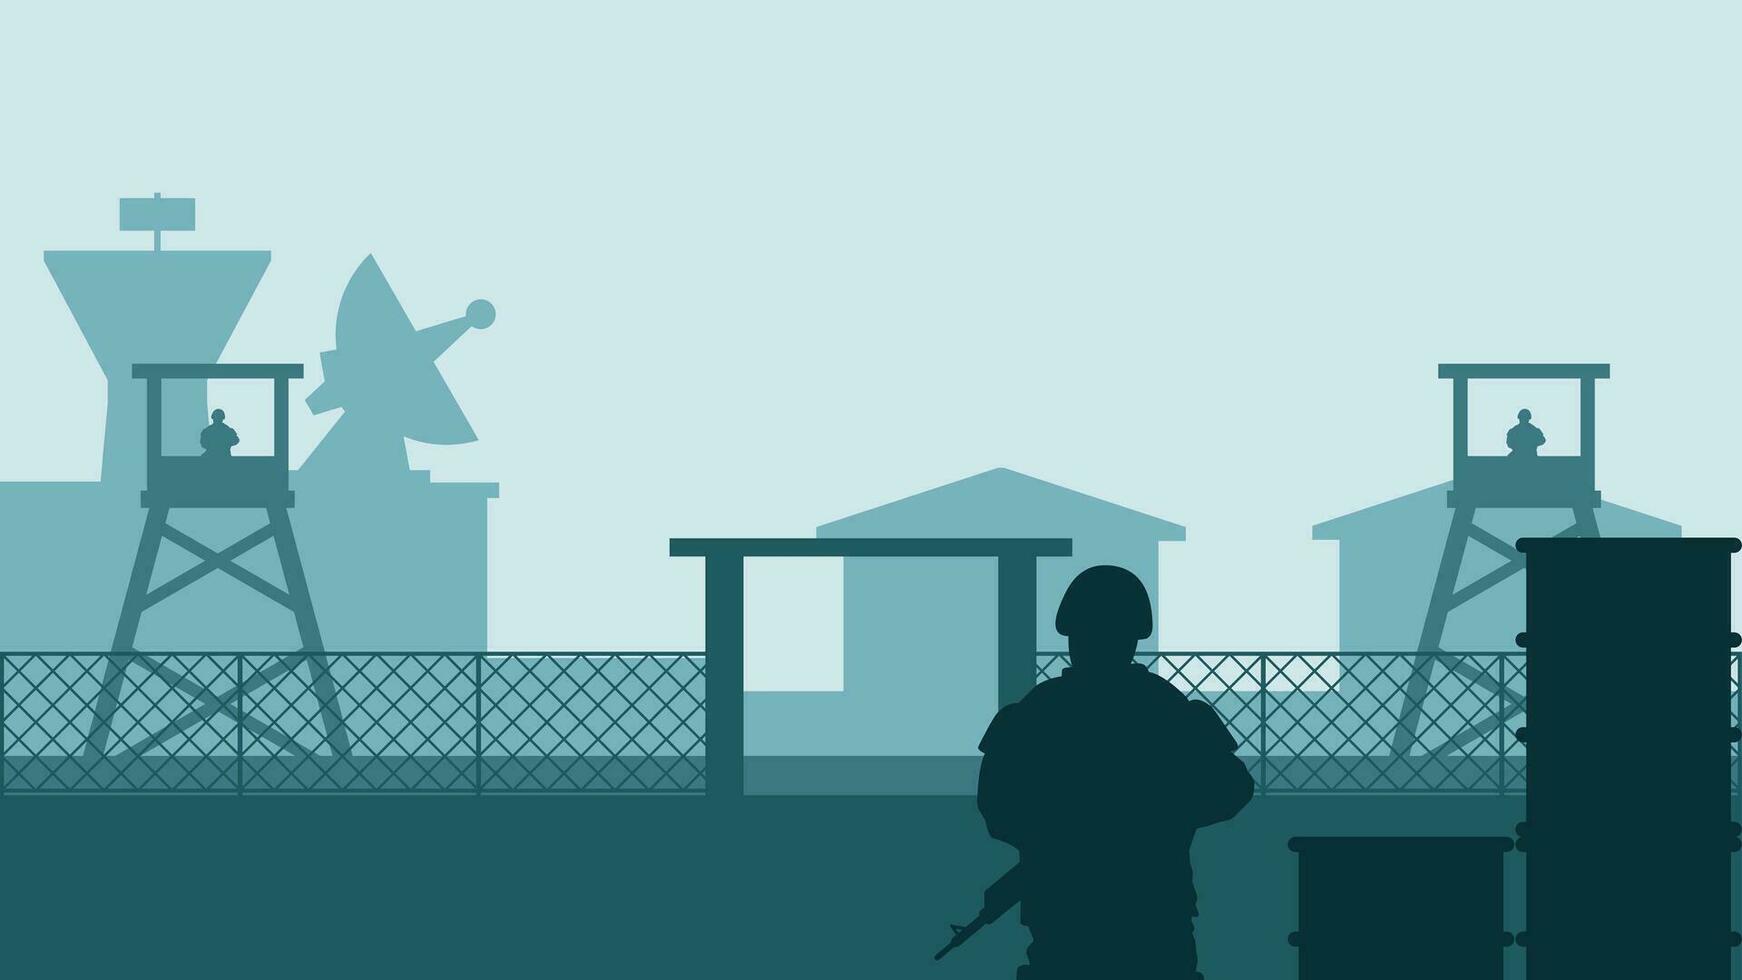 militar base paisaje vector ilustración. silueta de soldado a militar base con torre de vigilancia y cuartel. militar paisaje para fondo, fondo de pantalla o aterrizaje página